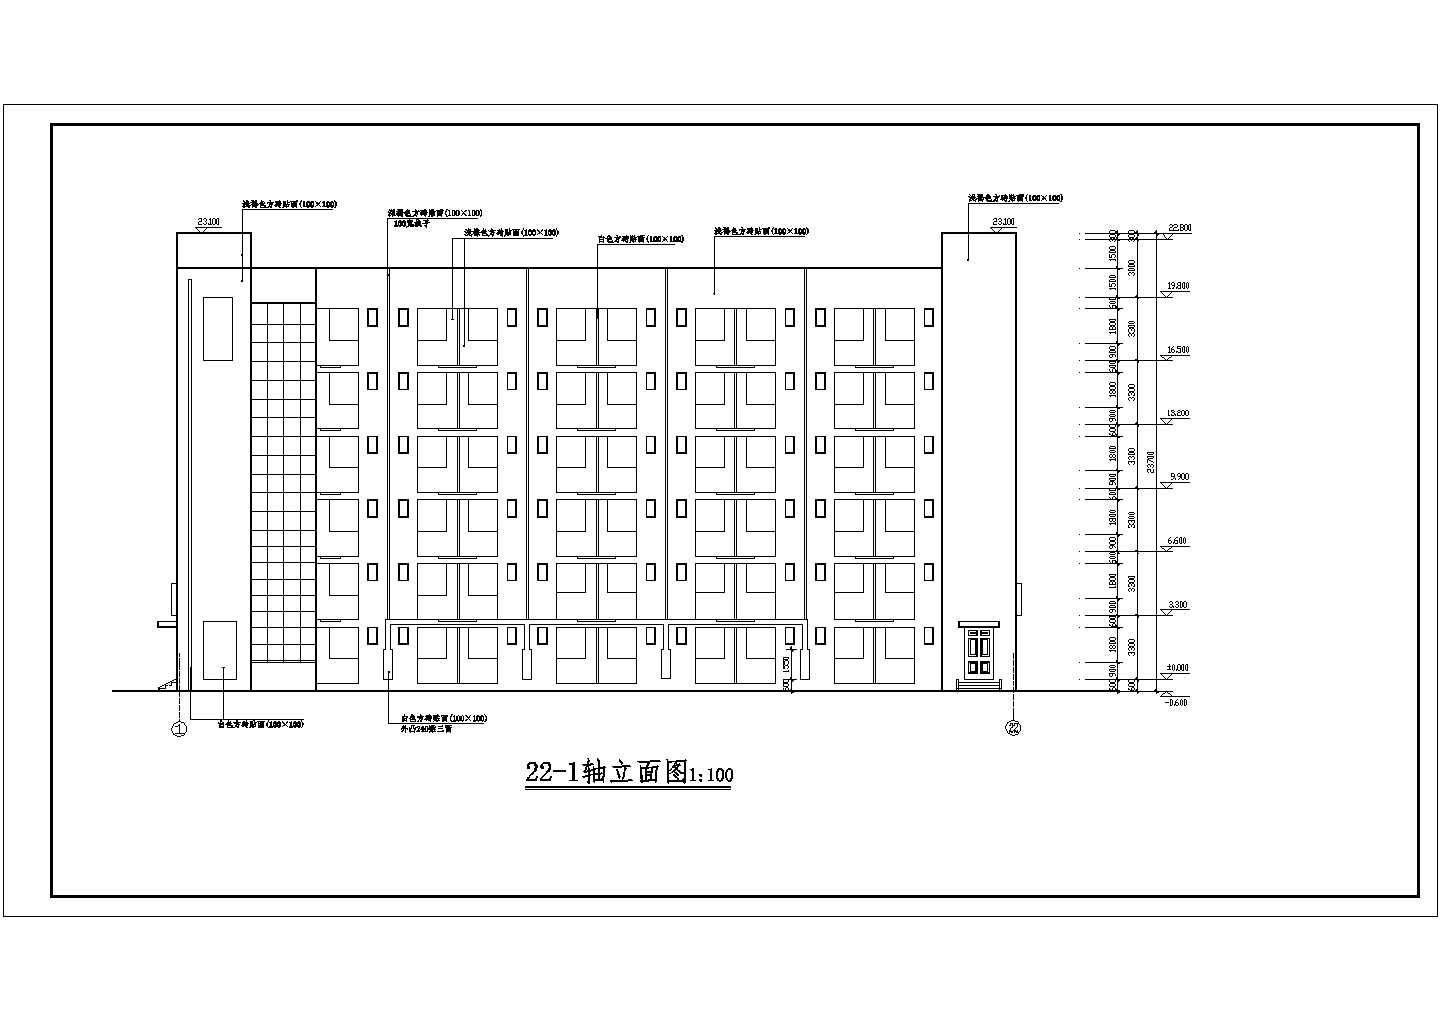 重庆某大学6层学生宿舍建筑设计方案图纸